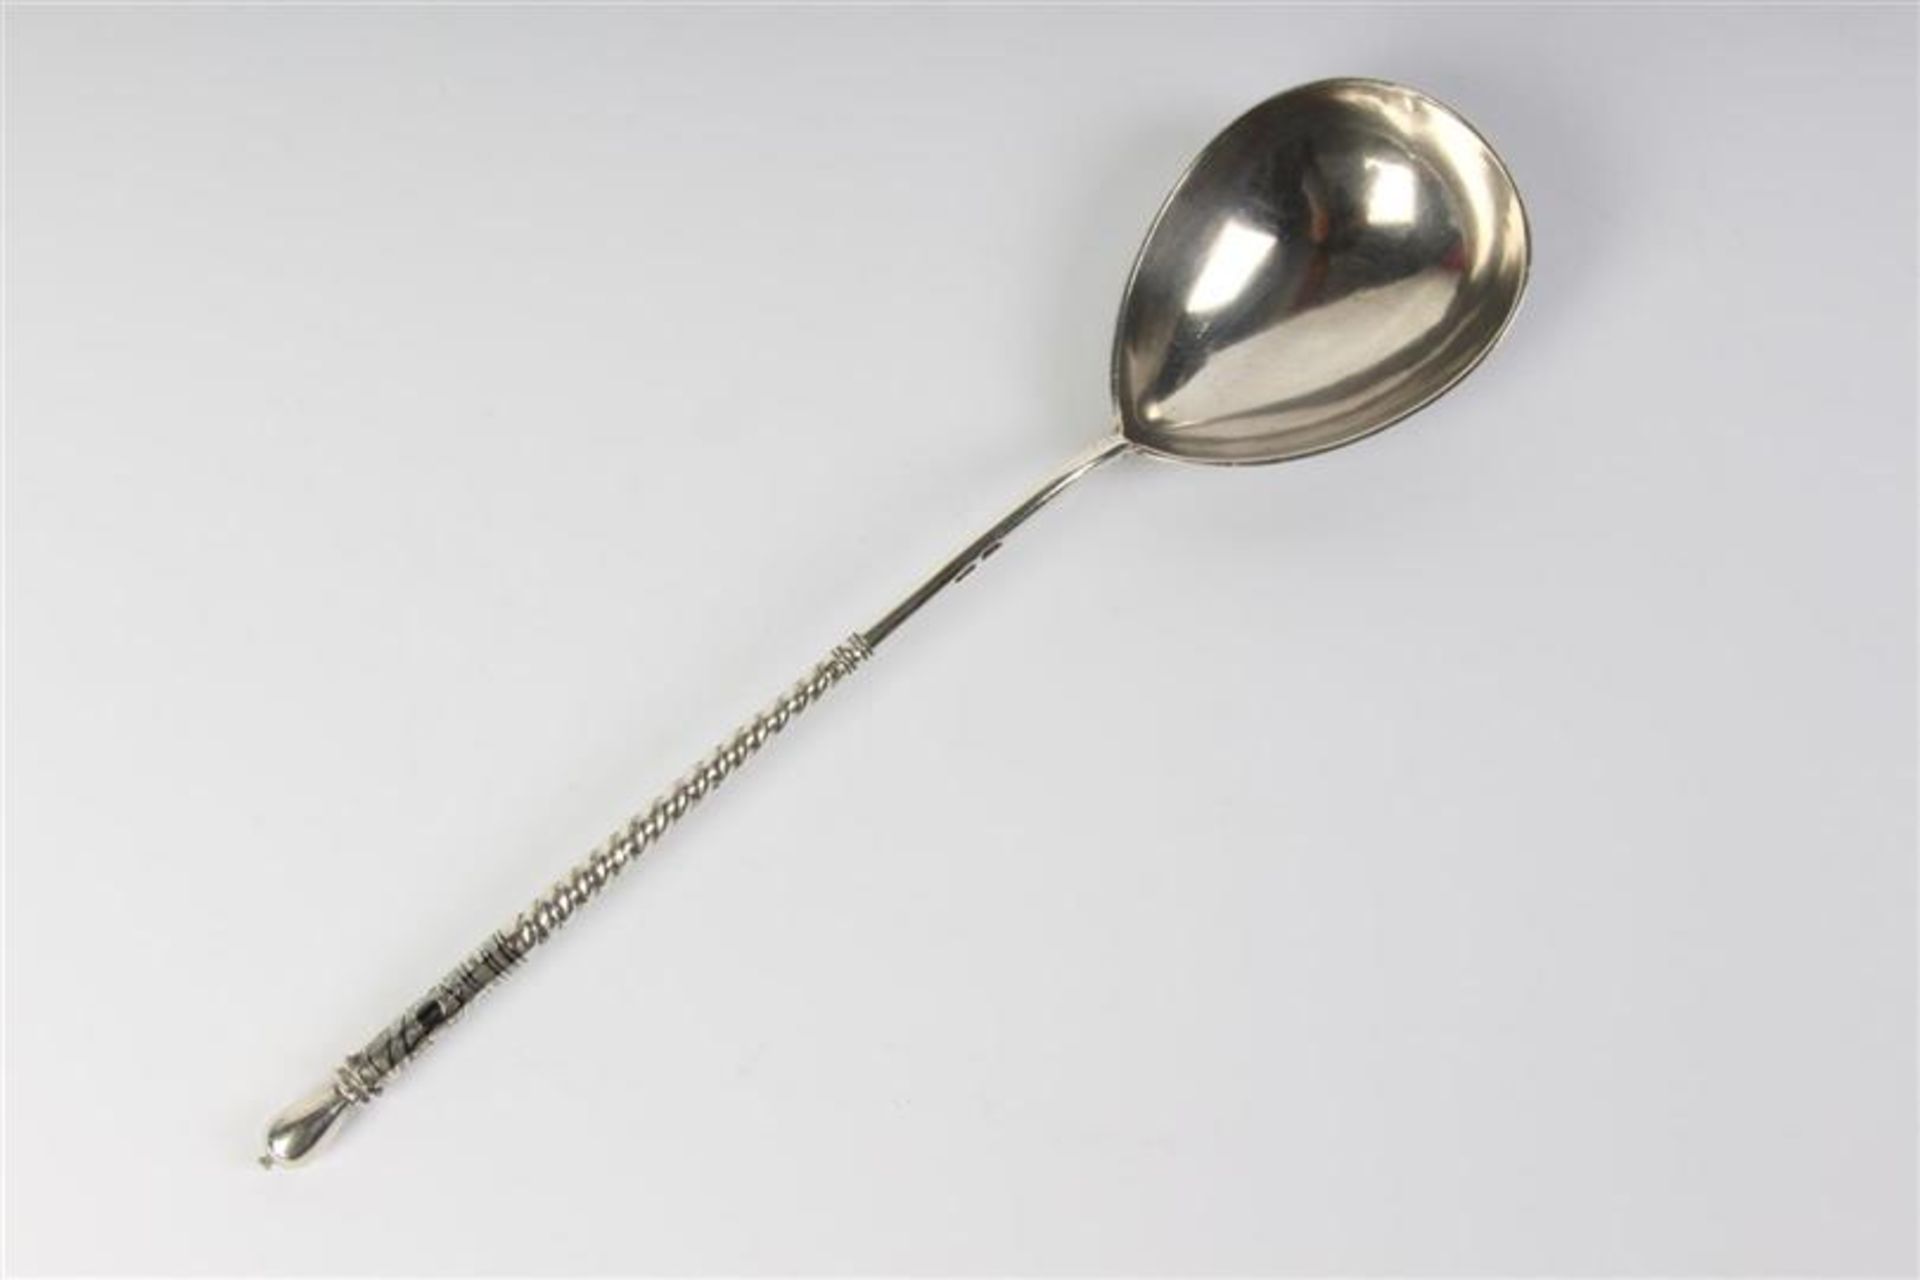 Zilveren lepel met niello, Rusland. Gewicht: 61.2 g. - Bild 3 aus 4